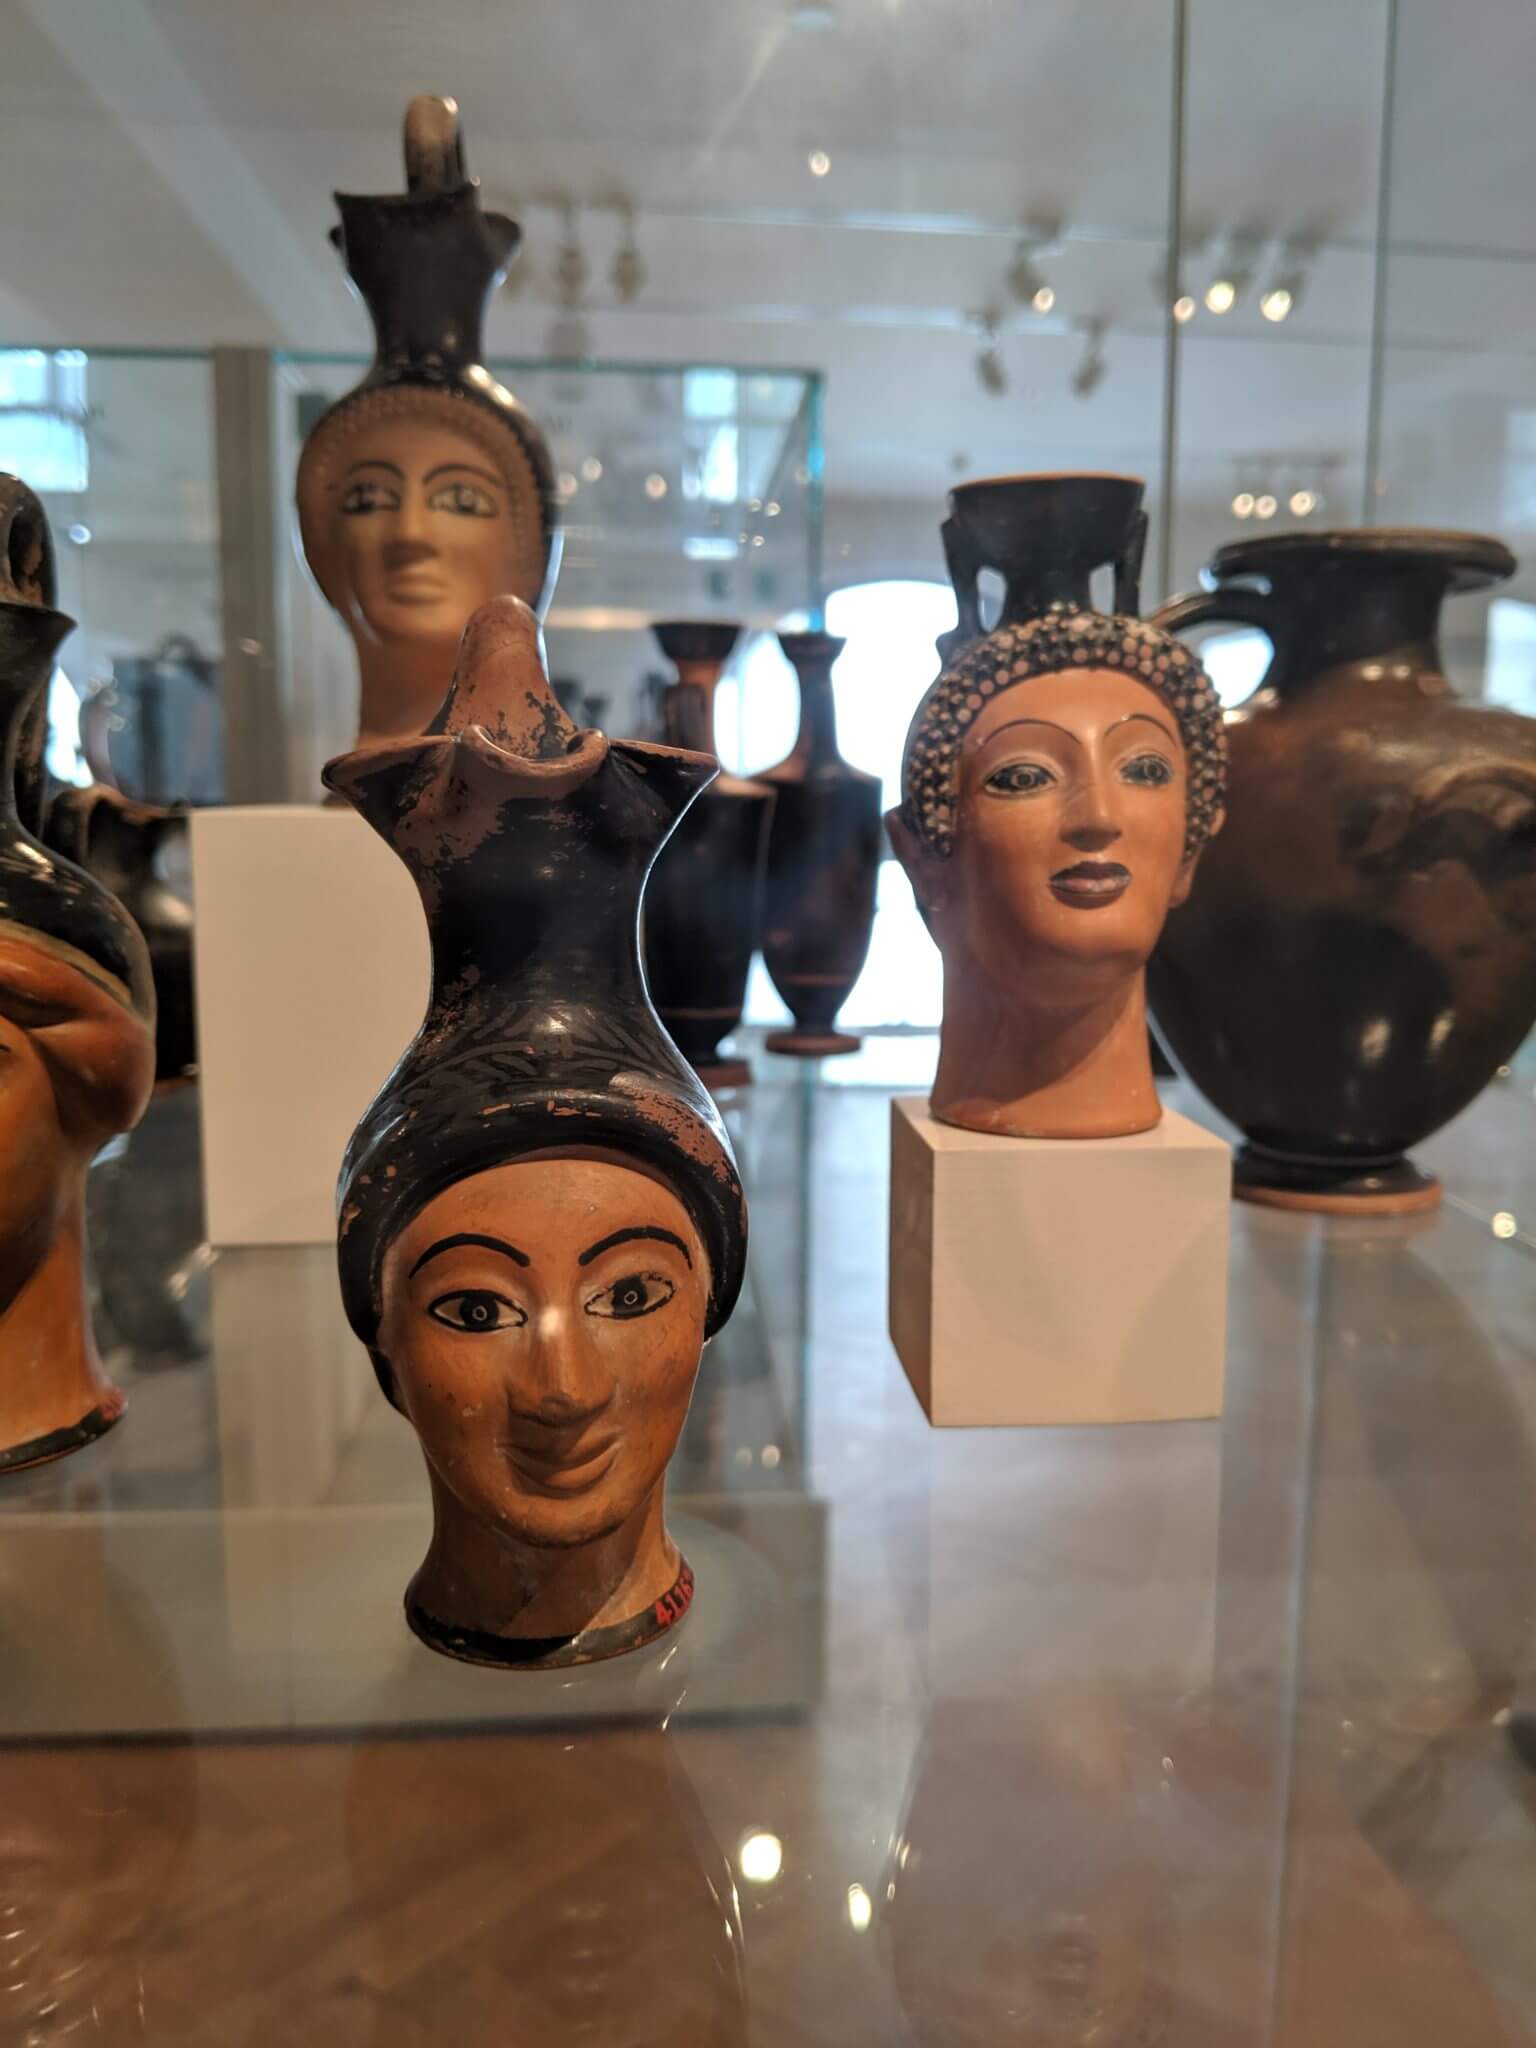 Roman heads